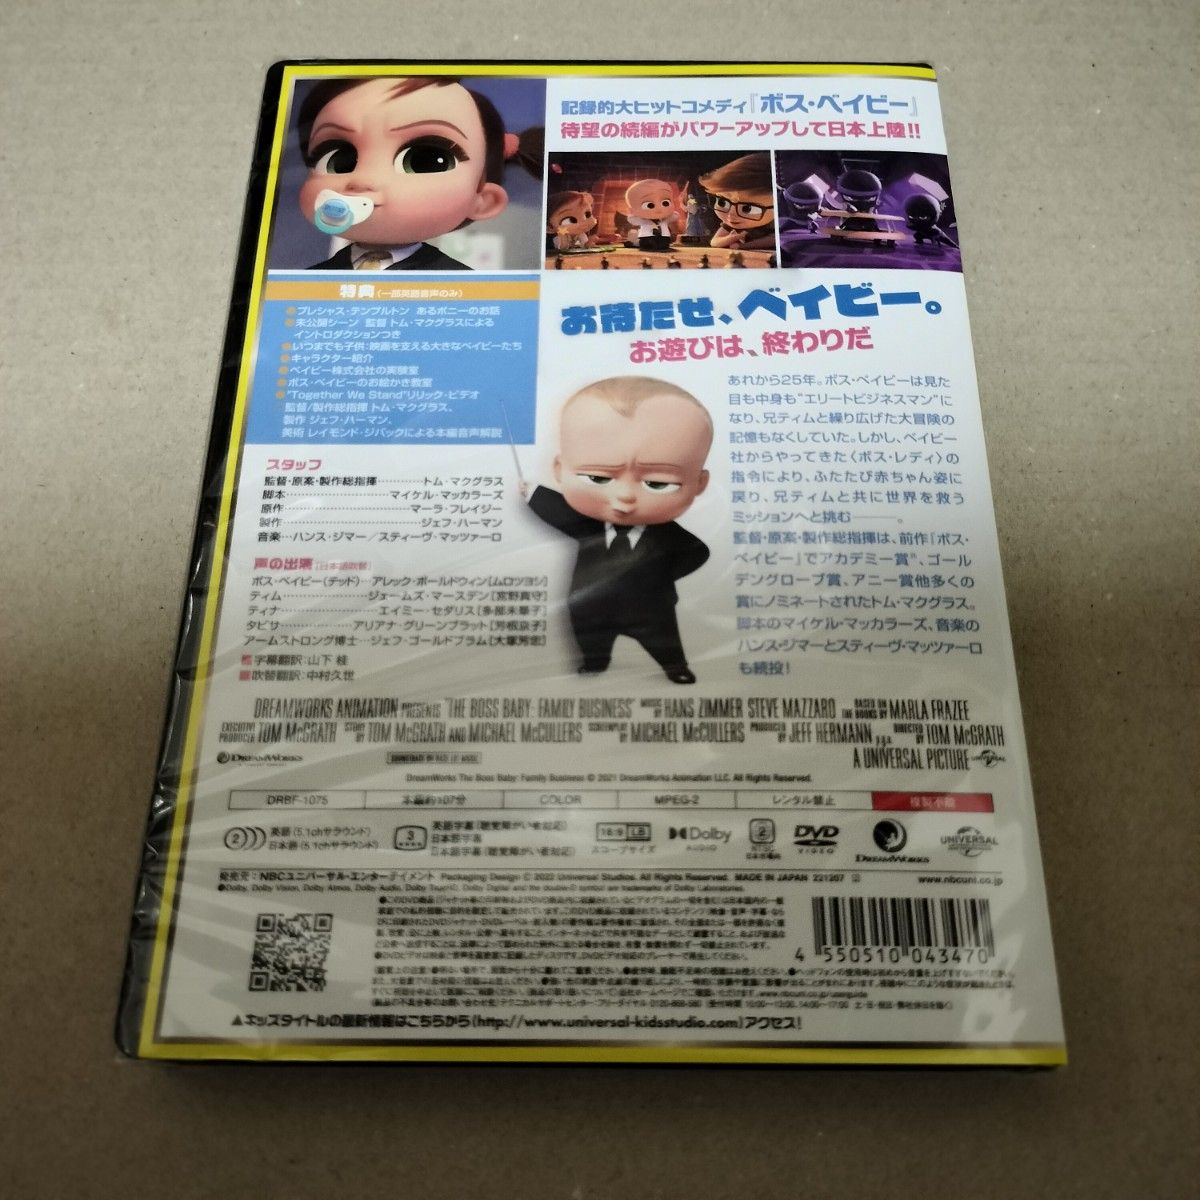 ボスベイビー + ファミリーミッション DVD 2部作セット 海外アニメ 劇場版 セル版 新品 未開封